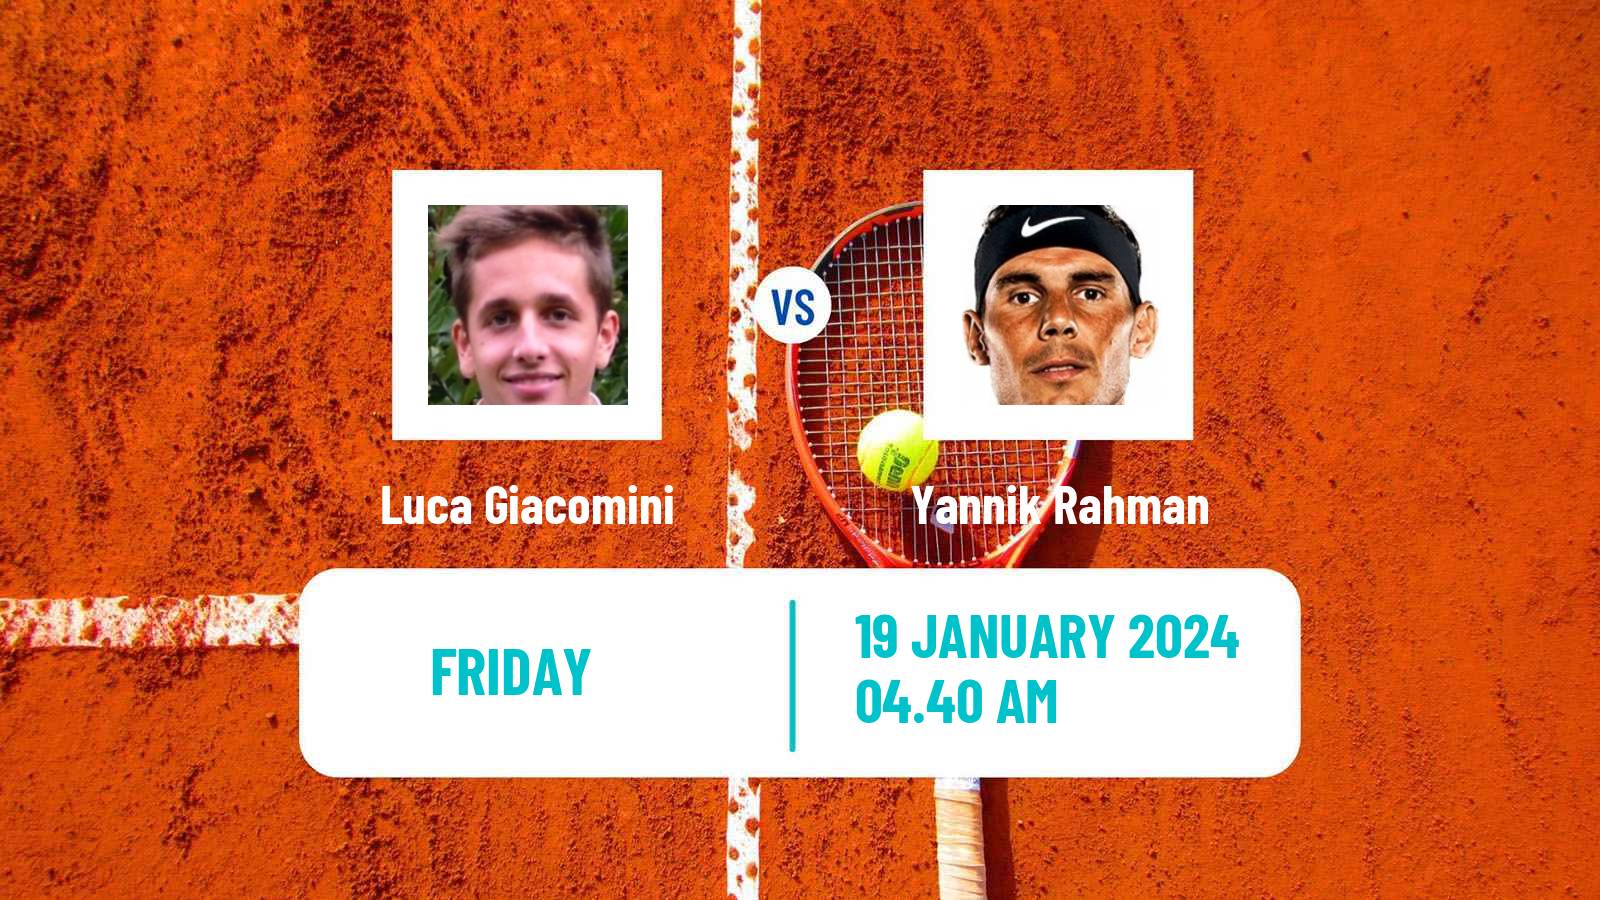 Tennis ITF M15 Manacor 2 Men Luca Giacomini - Yannik Rahman